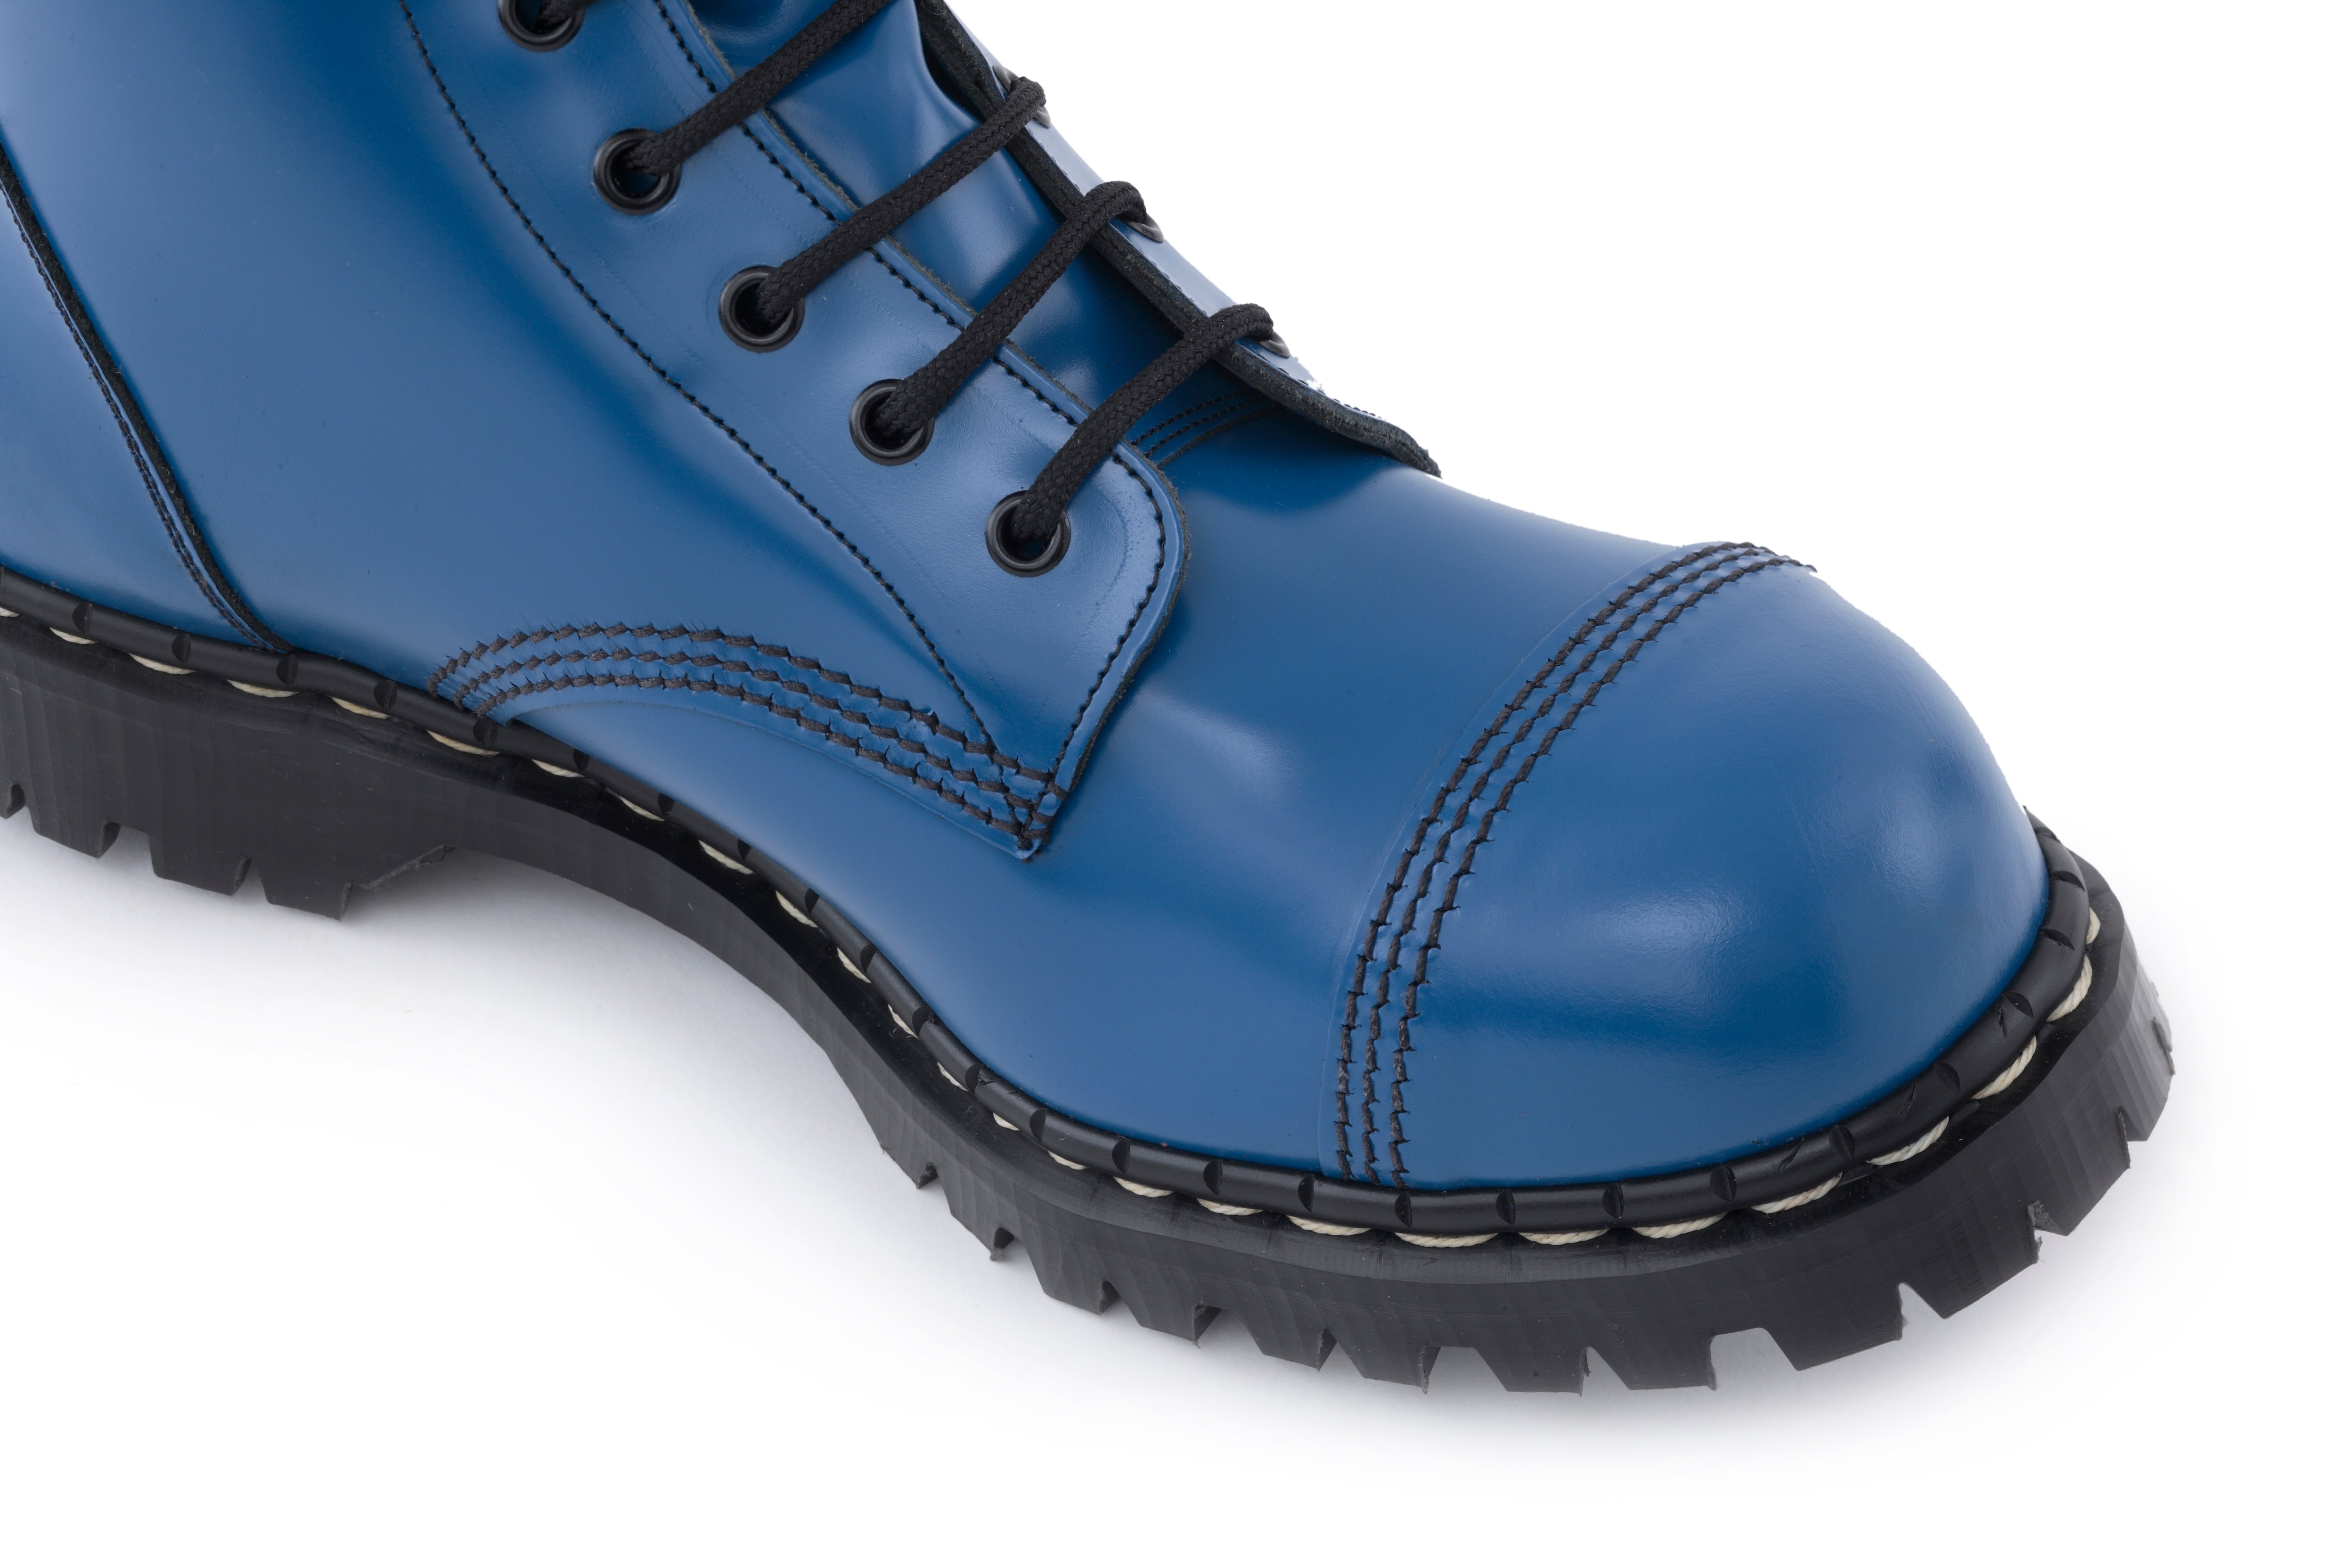 blue steel toe shoes